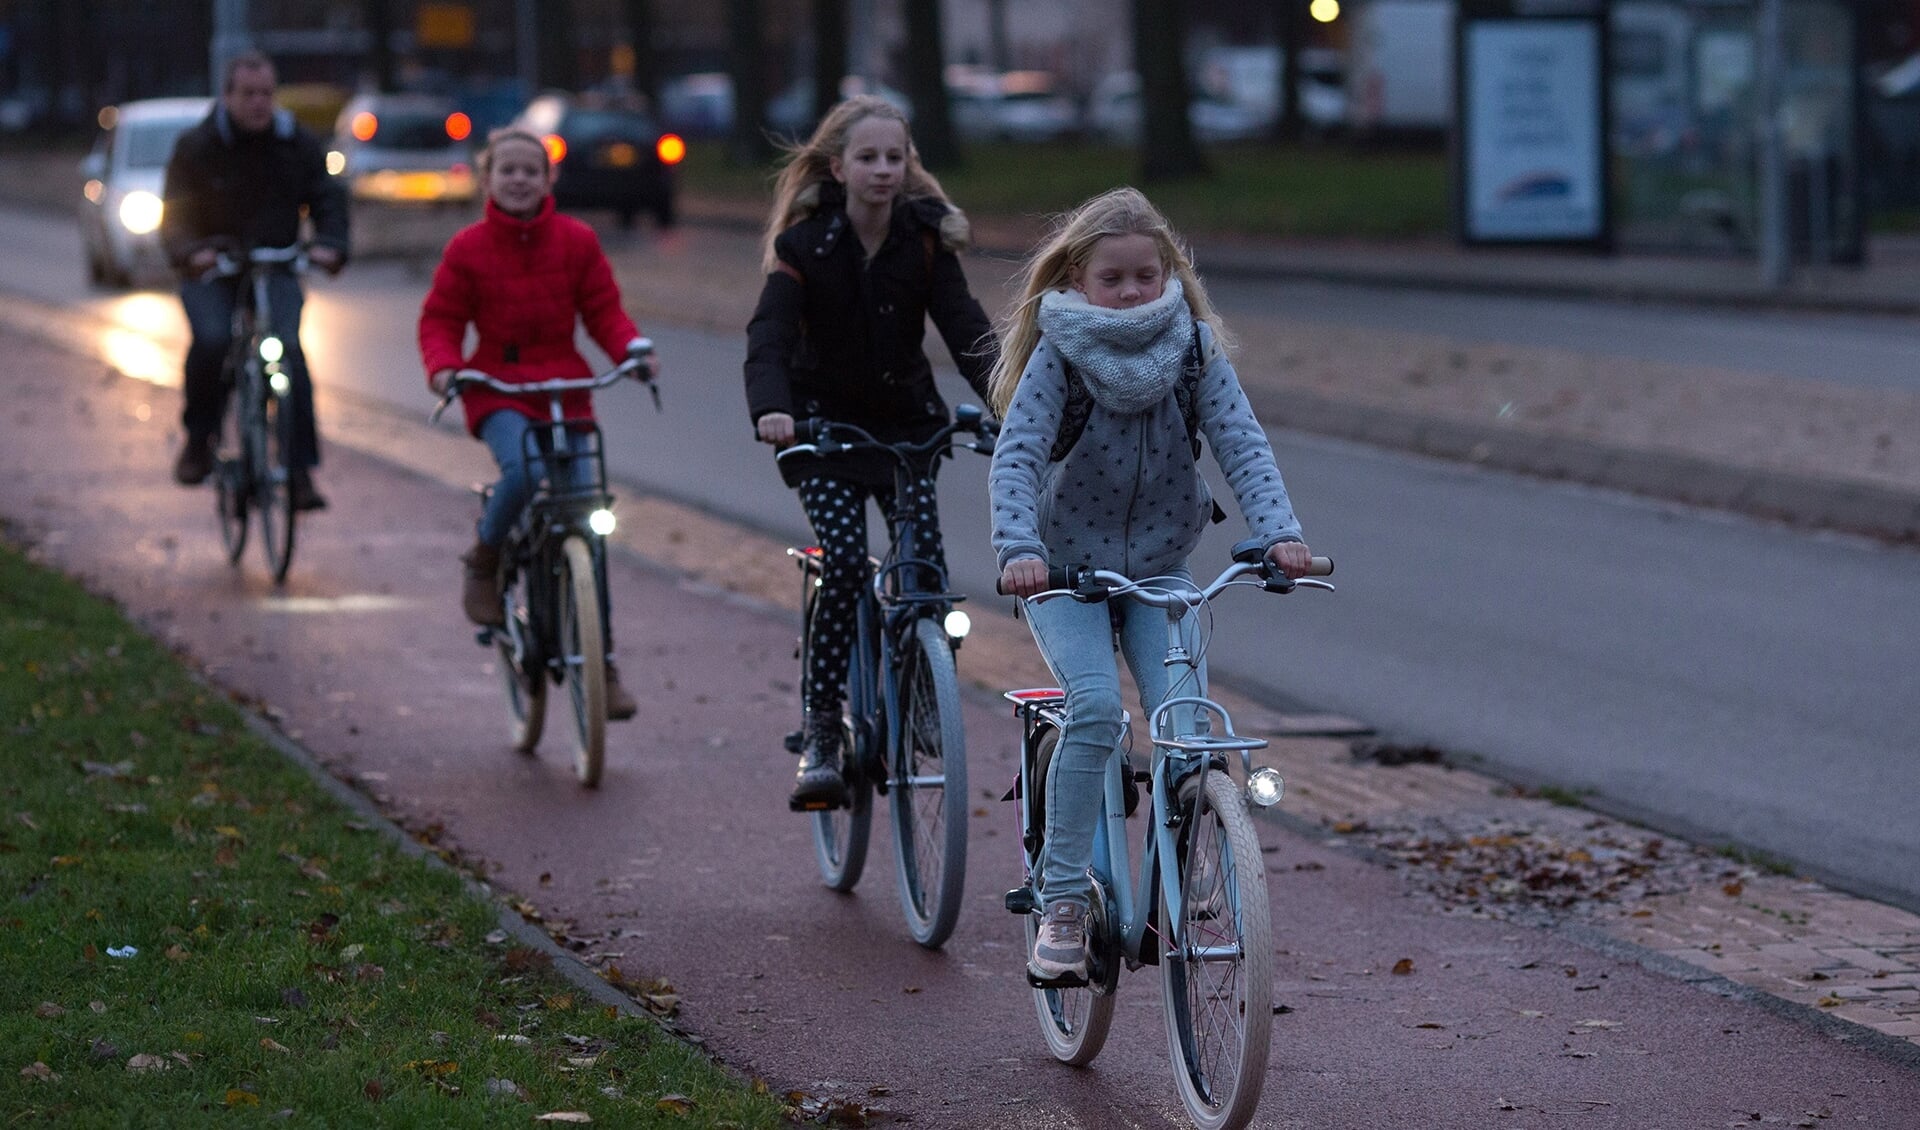 23-11-2016, Haarlem.
Kinderen fietsen in het donker met fietsverlichting.
Foto: Bastiaan Heus